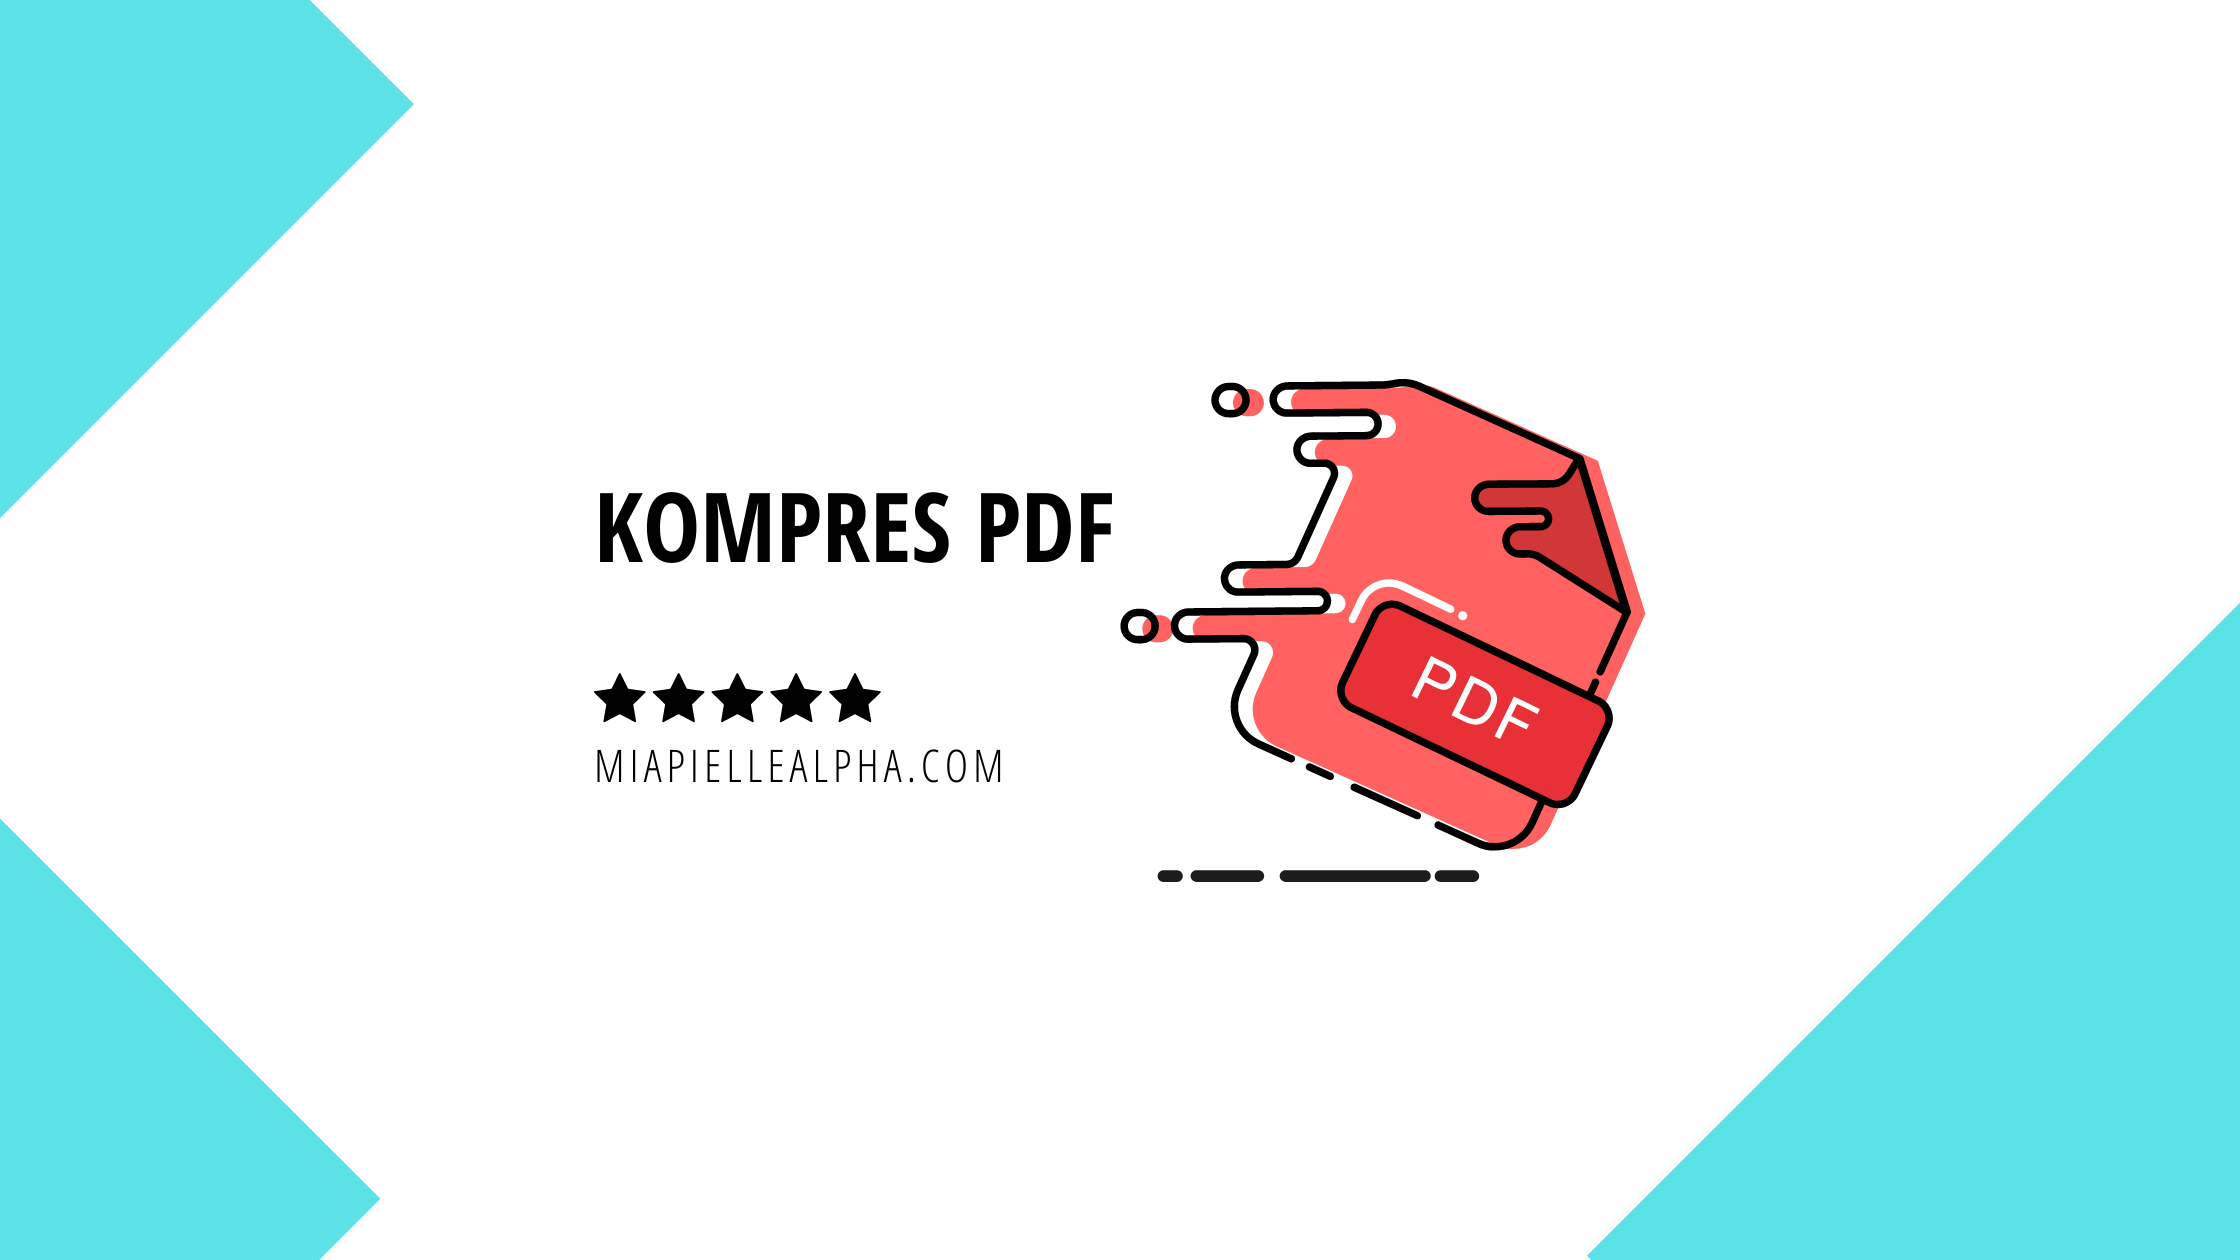 Kompres PDF